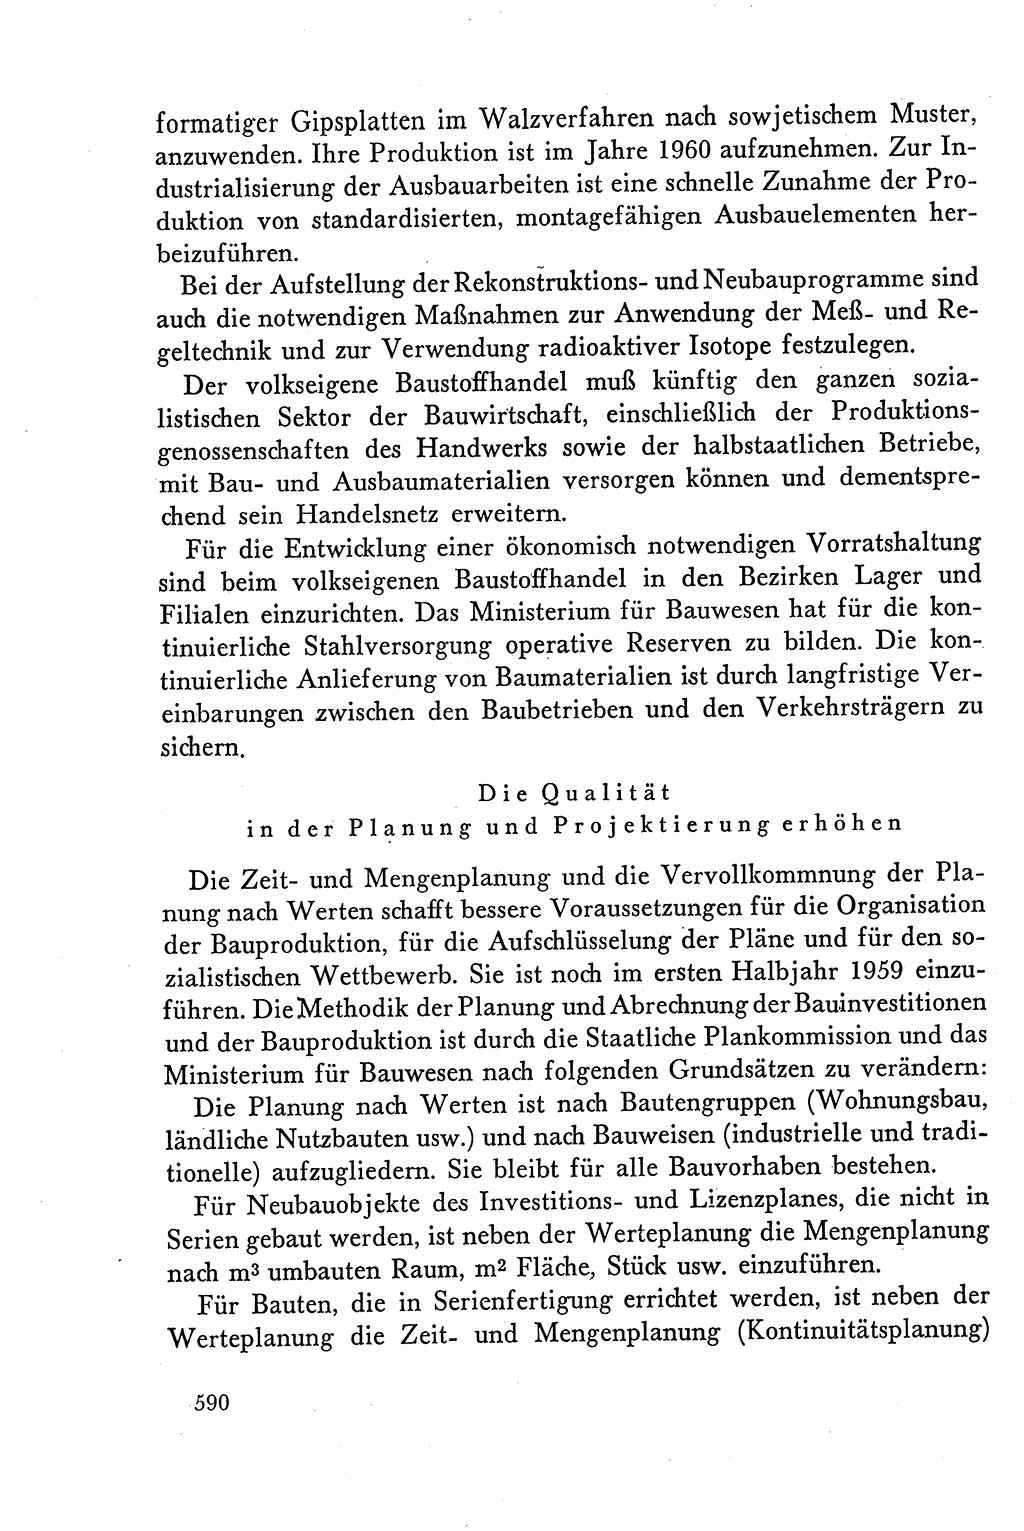 Dokumente der Sozialistischen Einheitspartei Deutschlands (SED) [Deutsche Demokratische Republik (DDR)] 1958-1959, Seite 590 (Dok. SED DDR 1958-1959, S. 590)